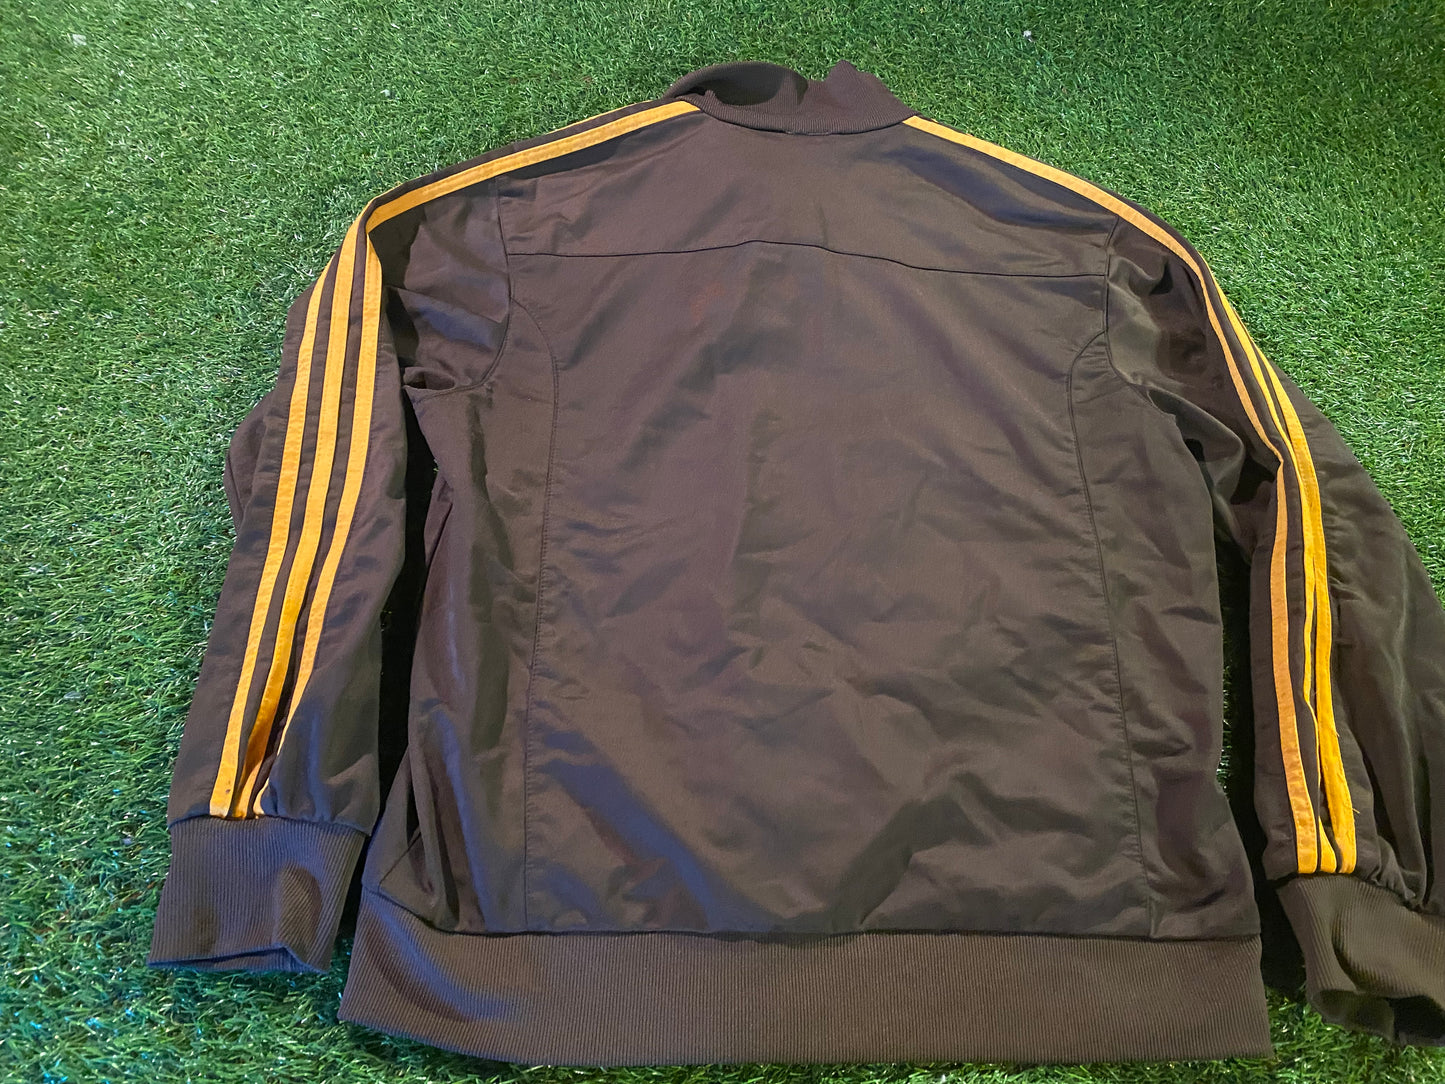 Adidas Rare Vintage Clothing Size Medium Mans Zip Up Single Layered Jacket